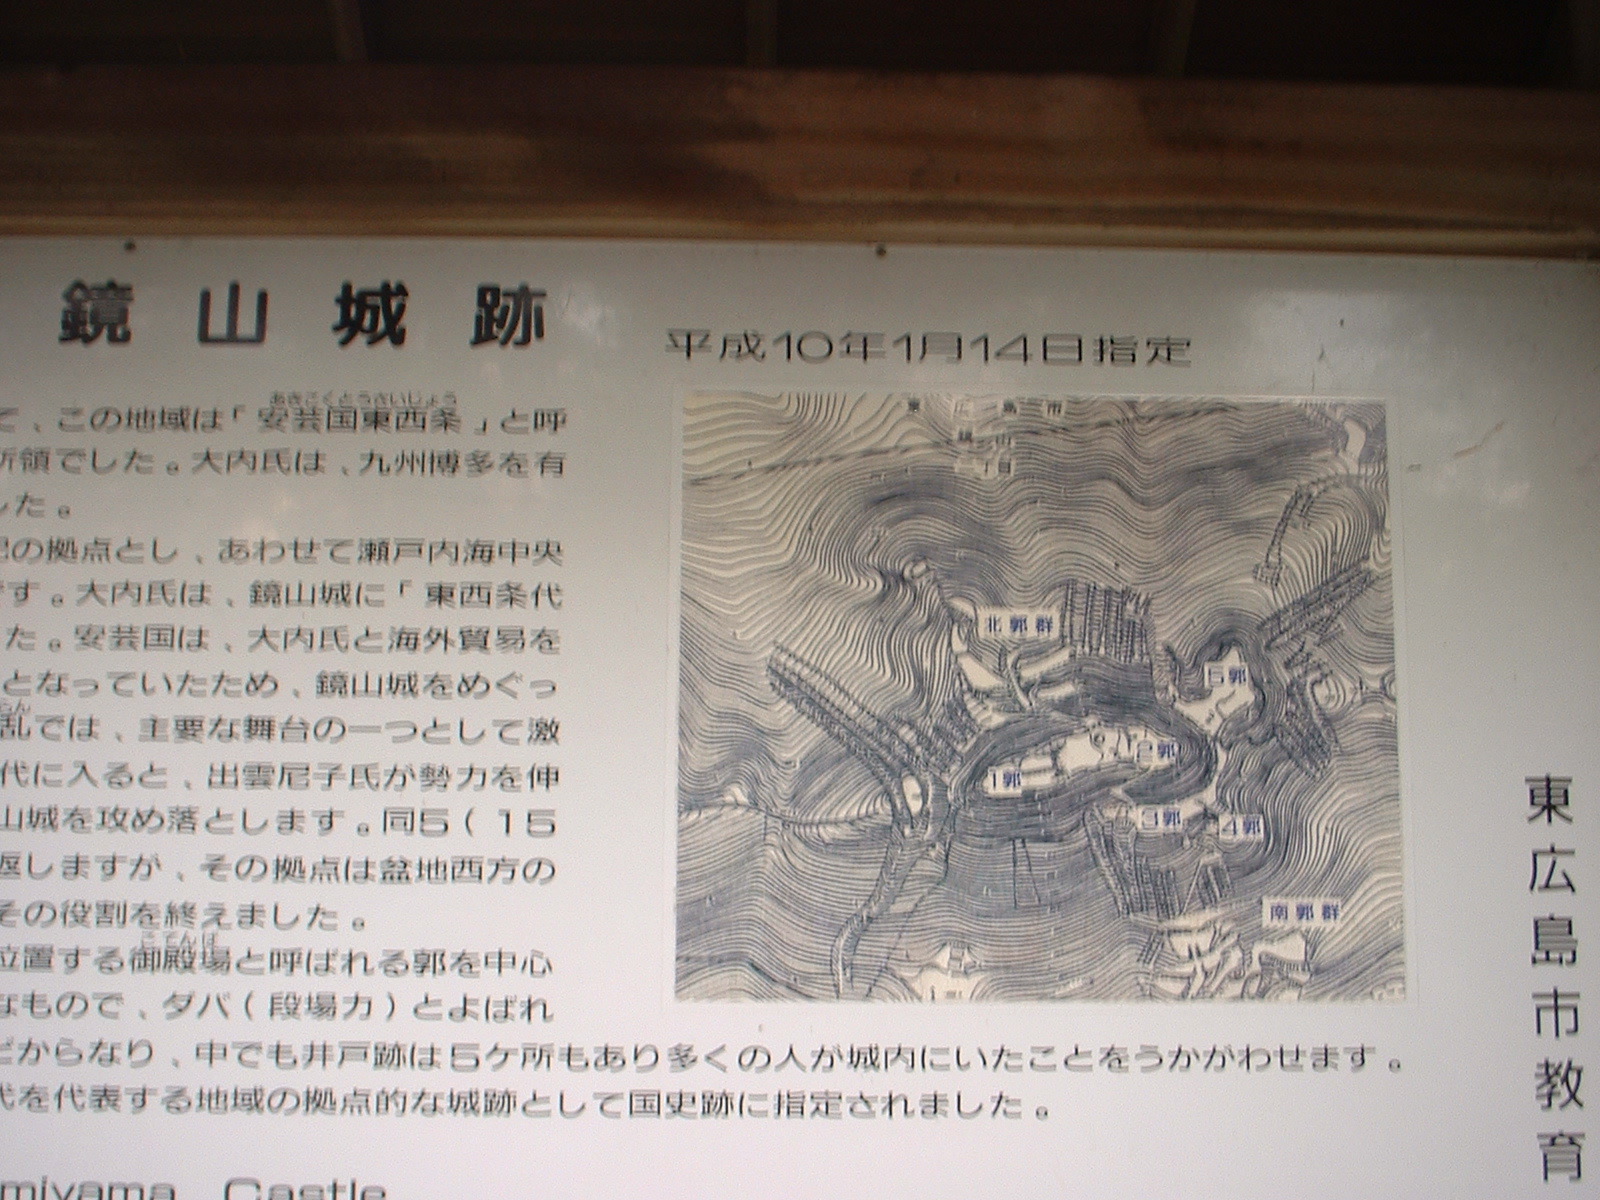 Mo-ri Motonari caputured this castle in 1523